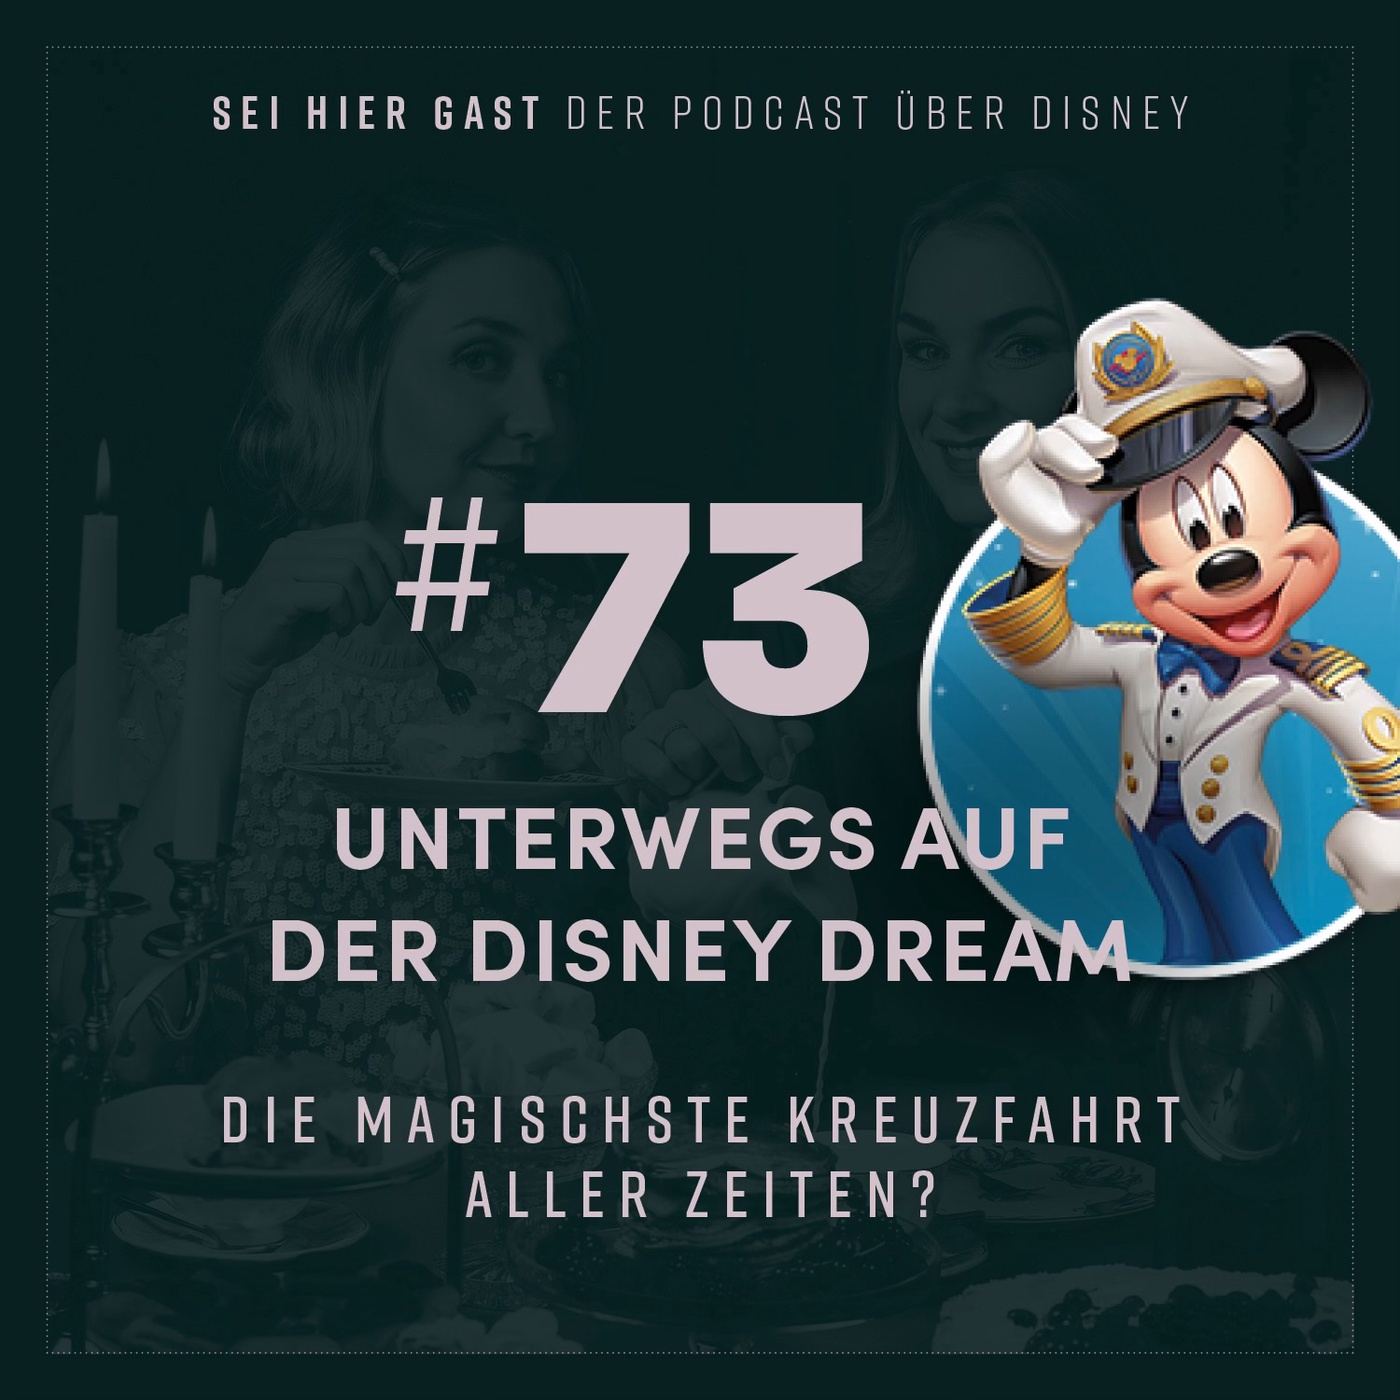 #73 Unterwegs auf der Disney Dream | Die magischste Kreuzfahrt aller Zeiten?